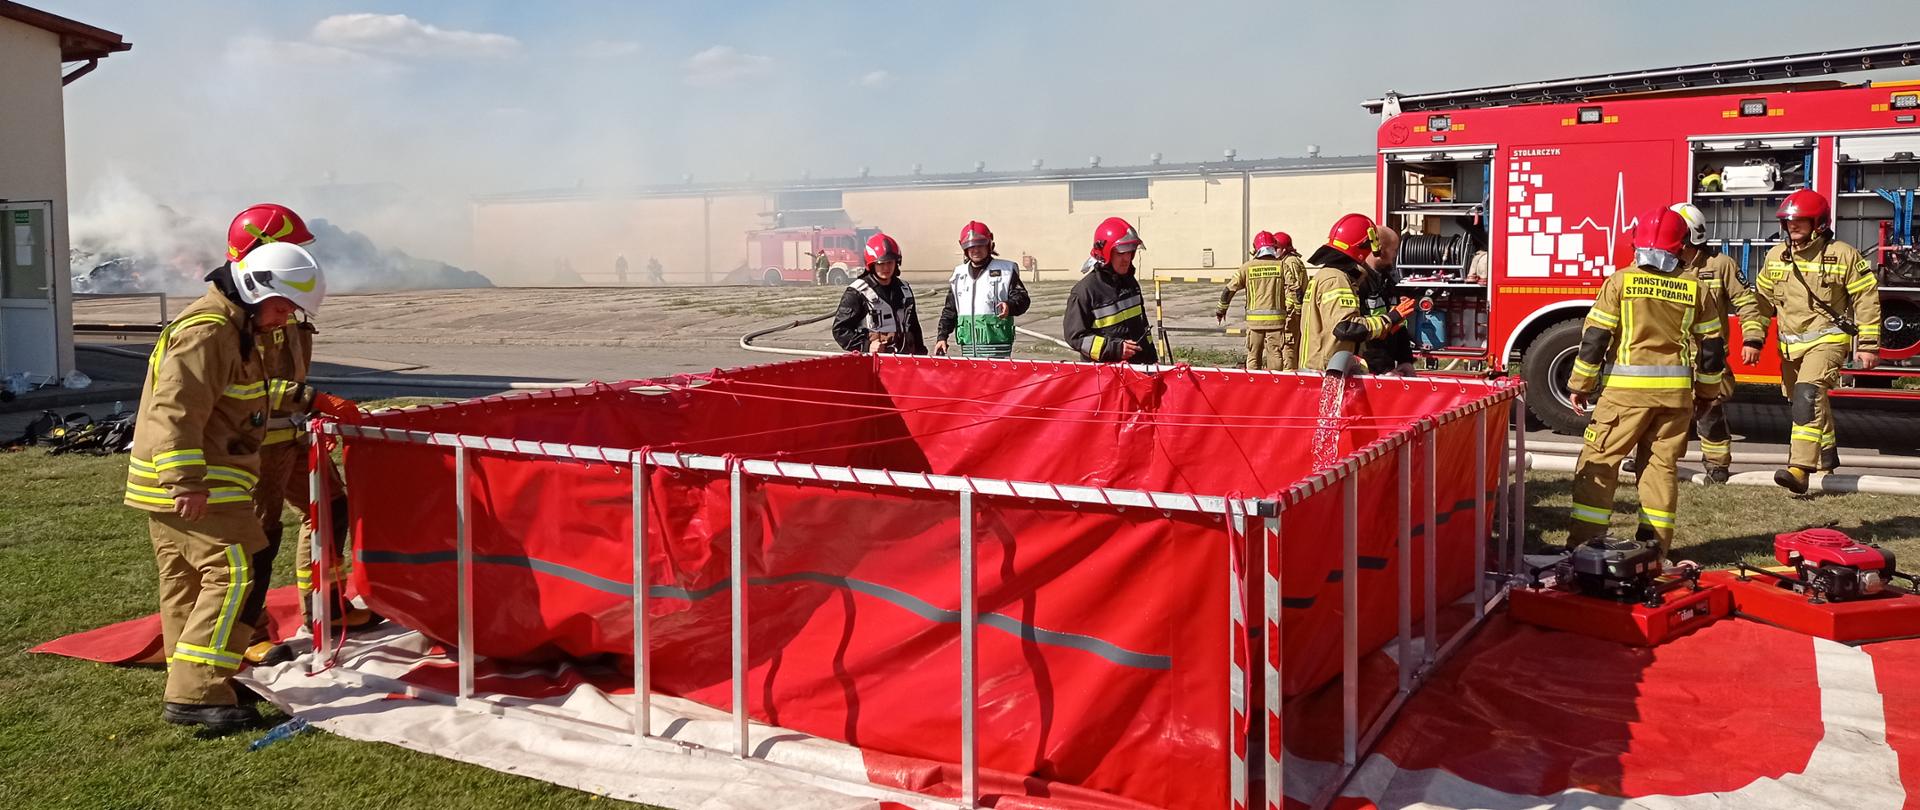 Zdjęcie przedstawia strażaków gaszących pożar w zakładzie produkującym biomasę, którzy sprawiają przenośny zbiornik brezentowy na wodę i uzupełniają wodę wężami pożarniczymi.
W tle budynki i palące się stogi słomy.
